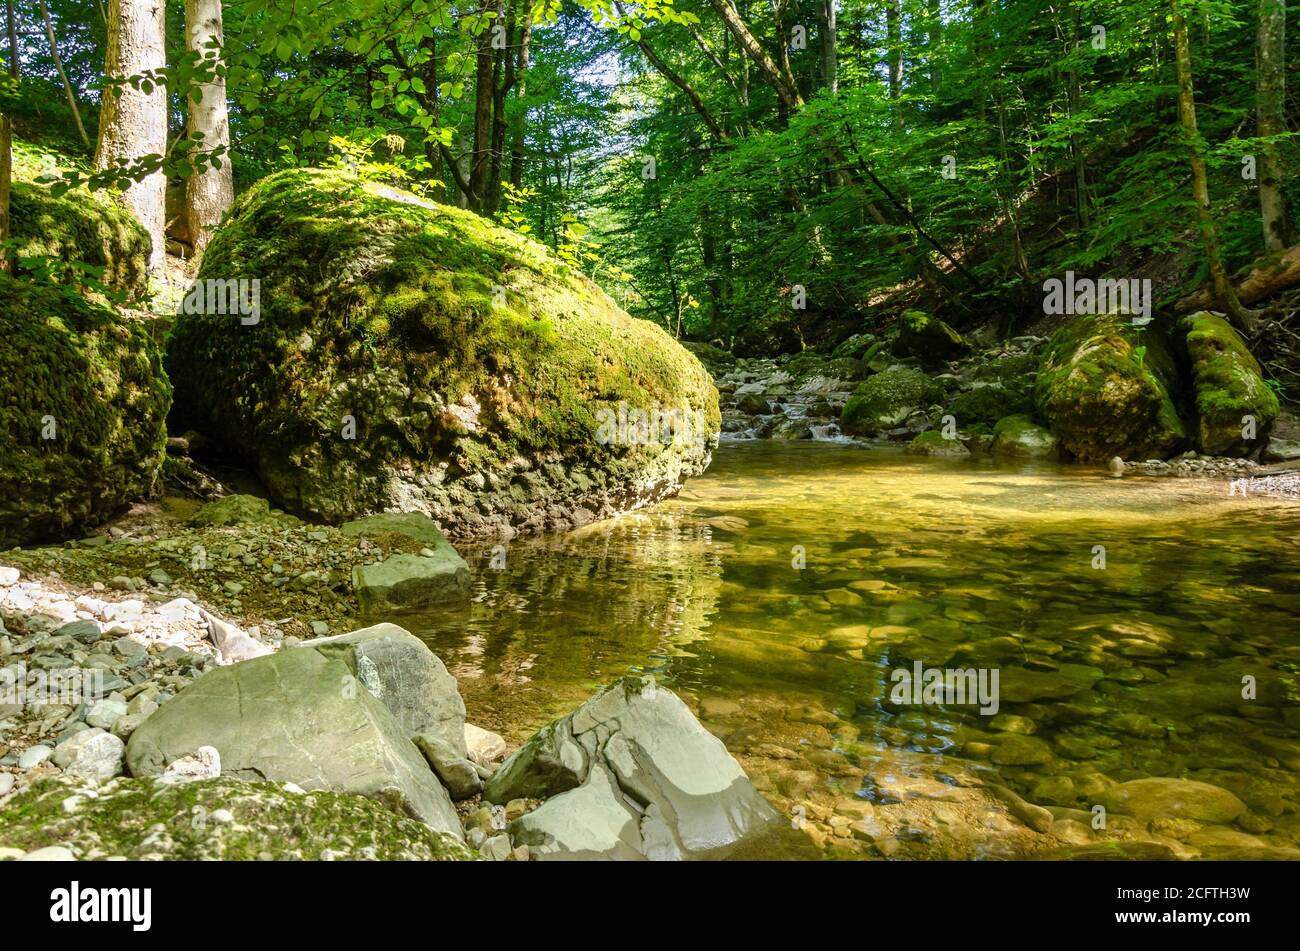 Gran roca, con musgo verde, junto a un tranquilo arroyo en un bosque soleado. Piedra grande en el borde de un lecho de arroyo en un bosque deciduo. Foto de stock